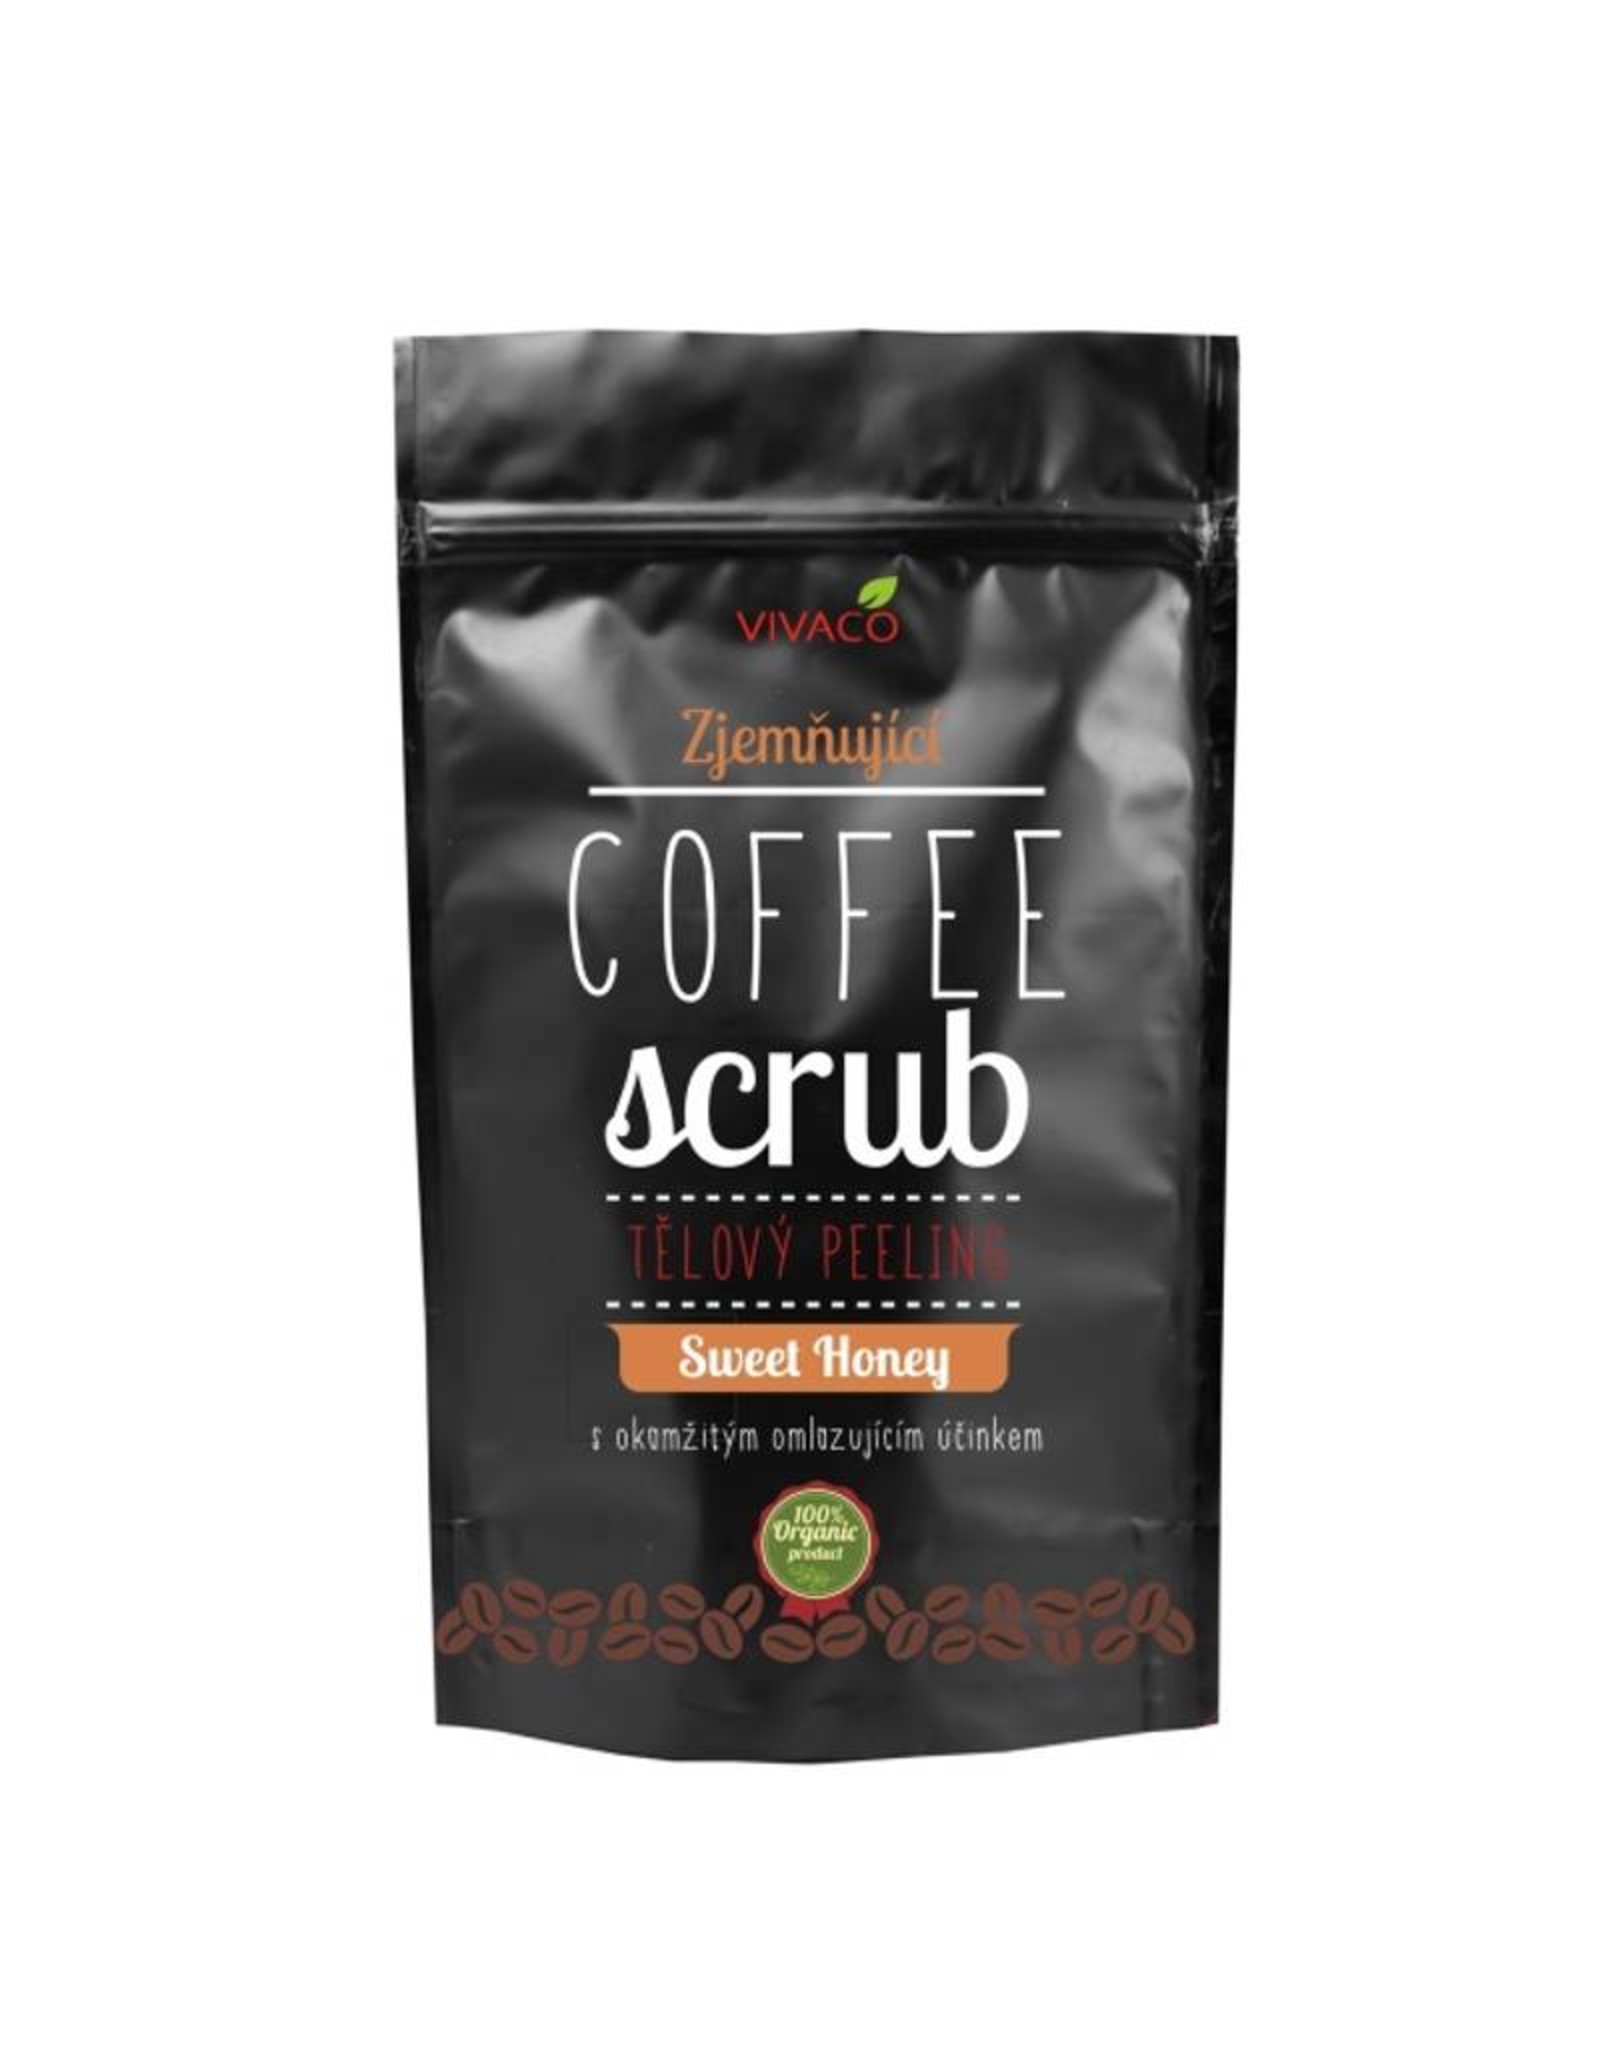 VIVACO Coffee Scrub Body Peeling met Honing (100% organisch)